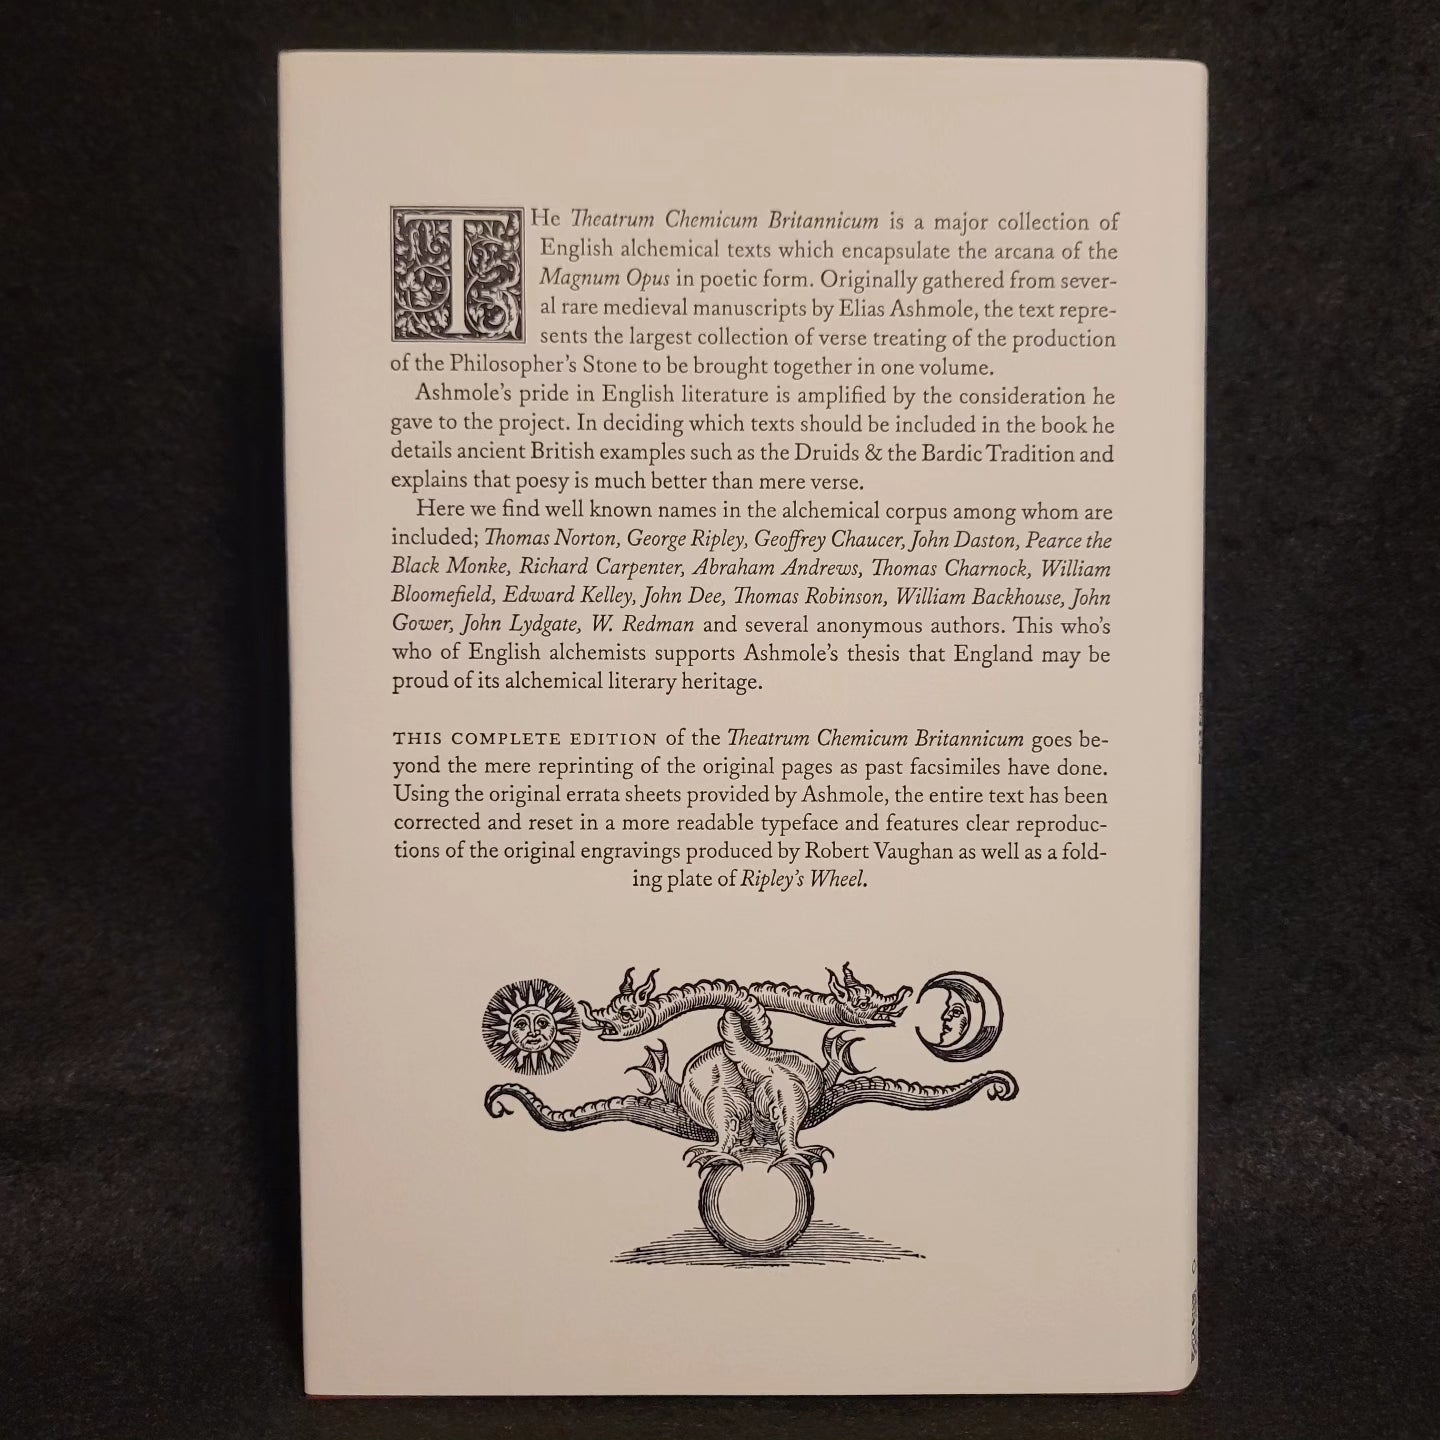 Theatrum Chemicum Britannicum by Elias Ashmole (Ouroboros Press, 2011) Limited Edition Hardcover